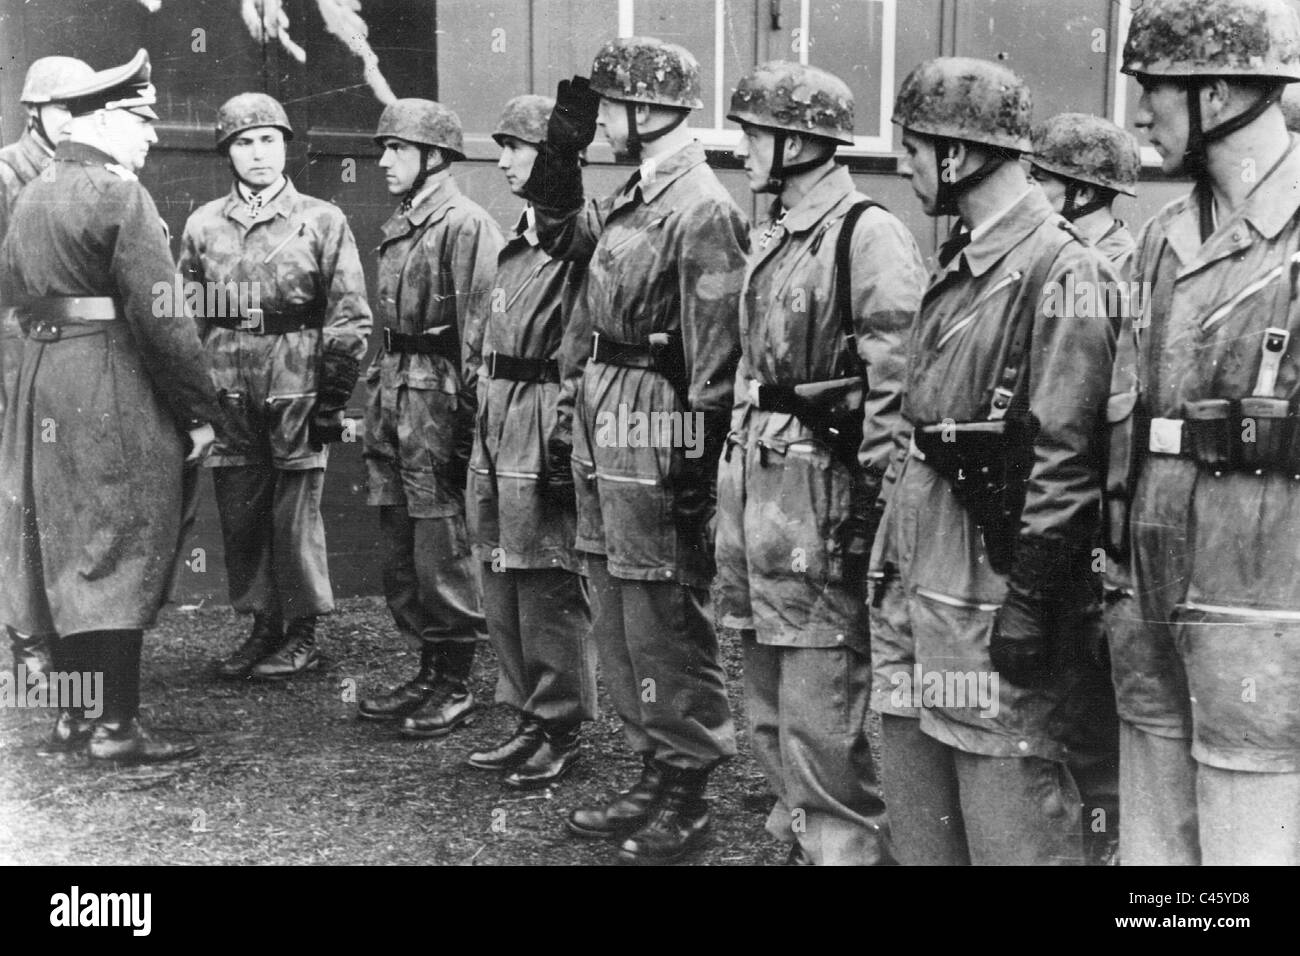 Kurt les enquêtes auprès des élèves parachutistes, 1940 Banque D'Images